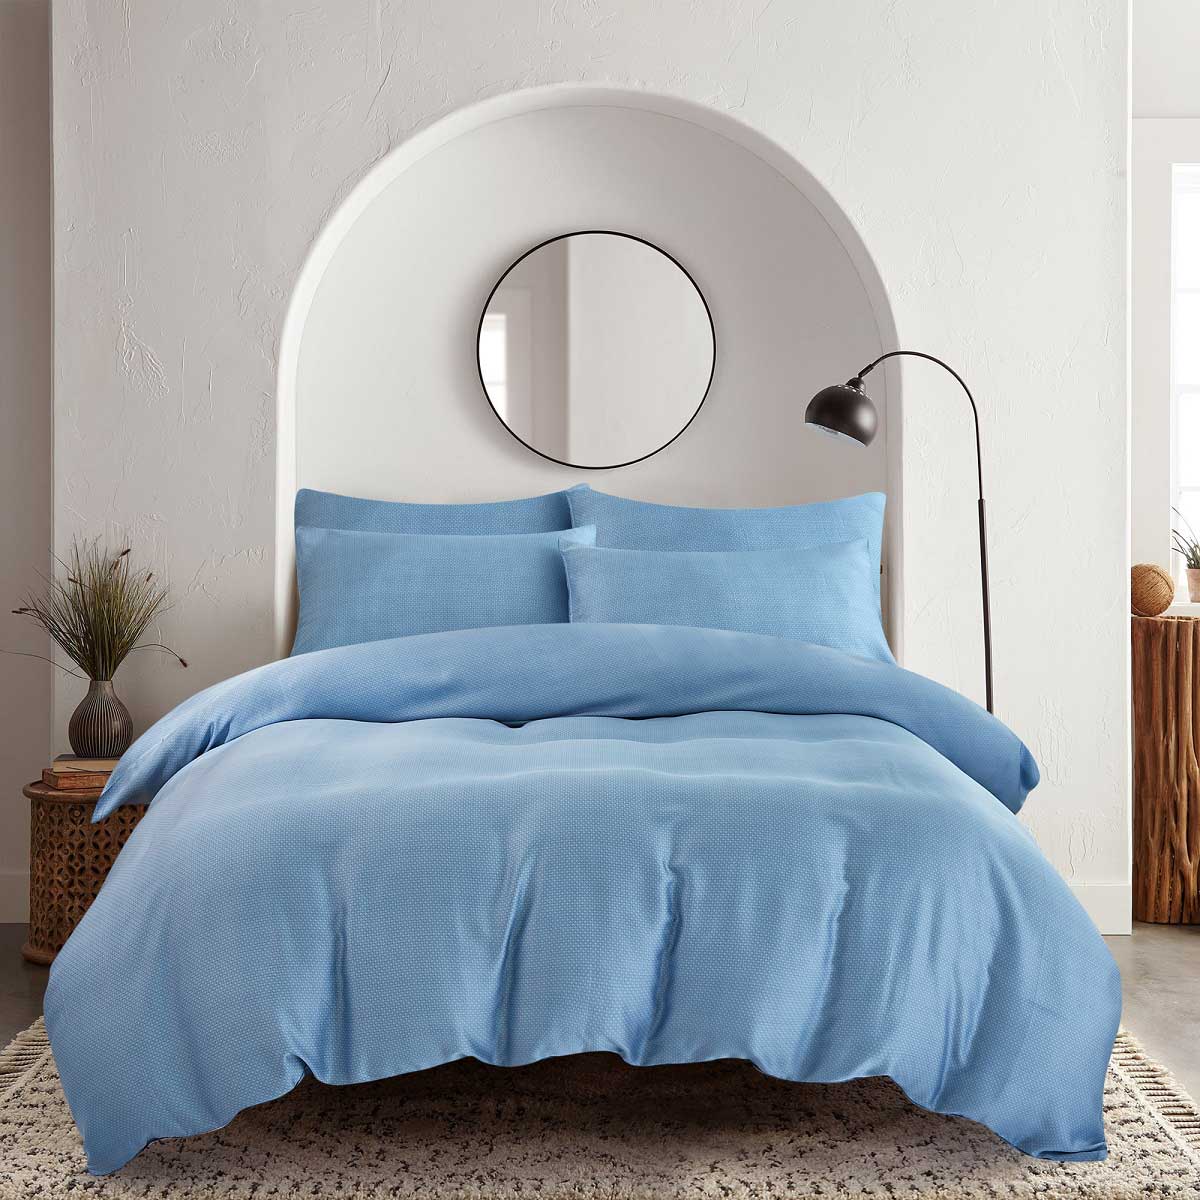 комплект постельного белья rustic blue полутораспальный полисатин синий Комплект постельного белья семейный Pappel smooth blue